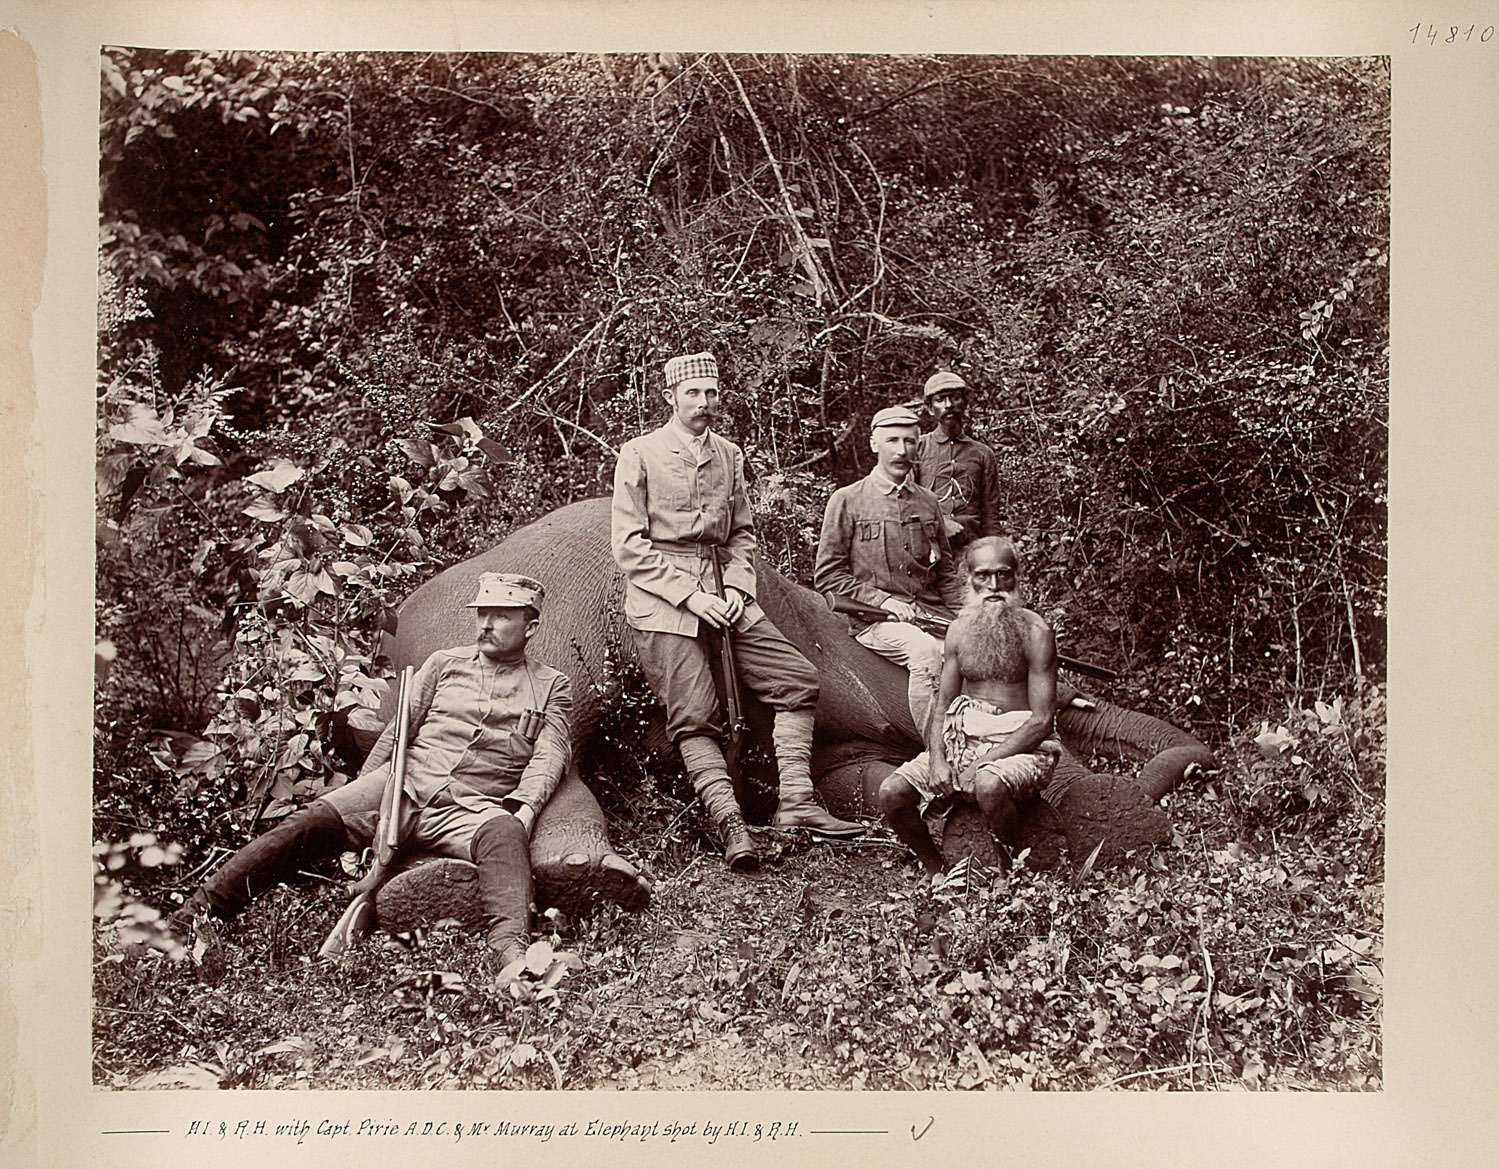 Sr k.u.k. Hoheit mit Mr. Pirie u. Mr. Murray beim erlegten Elephanten von Charles Kerr